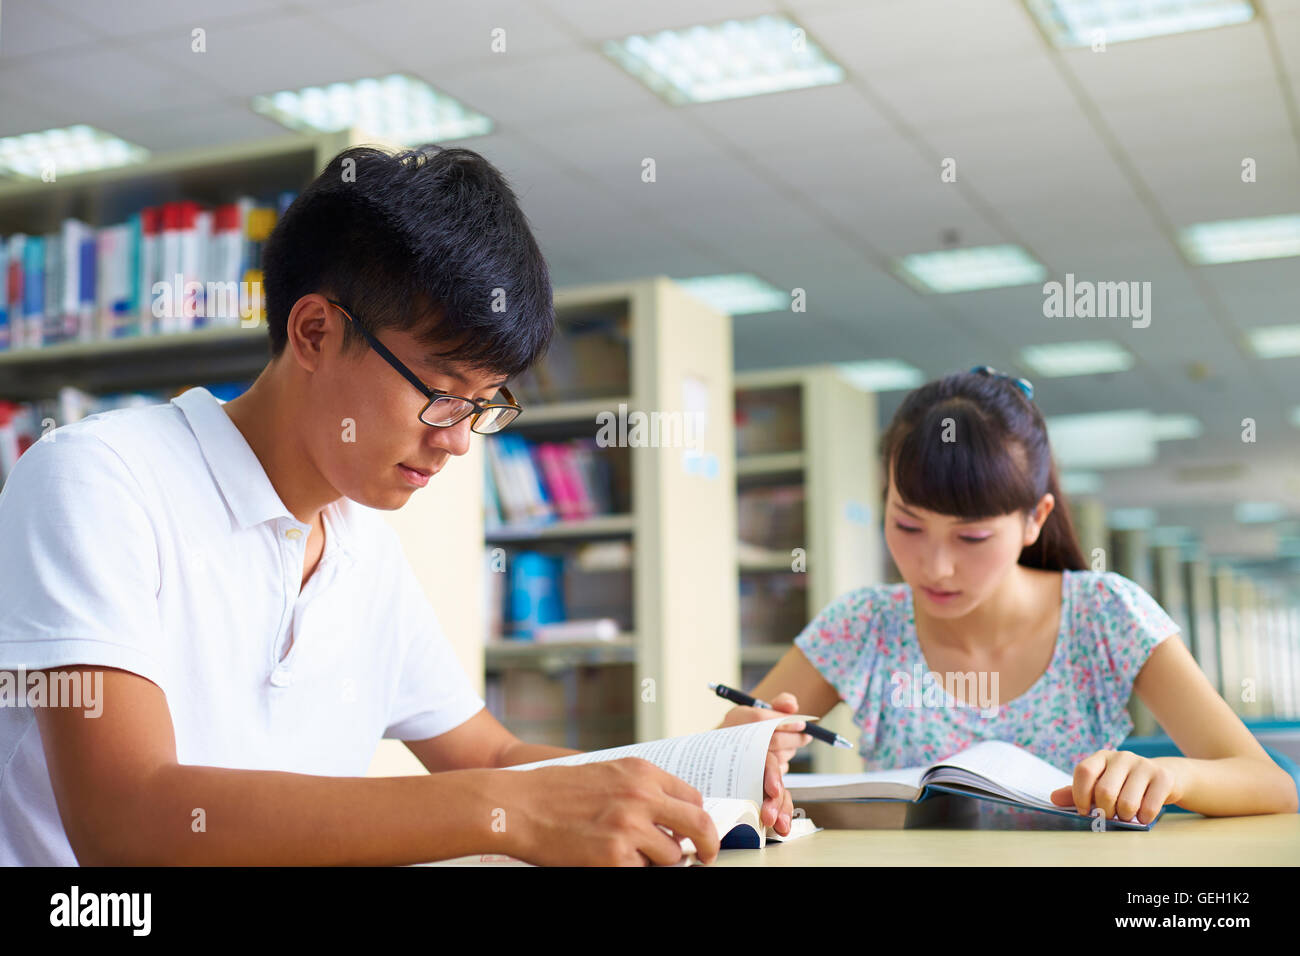 Los jóvenes asiáticos o estudiantes universitarios chinos estudian juntos en la biblioteca Foto de stock